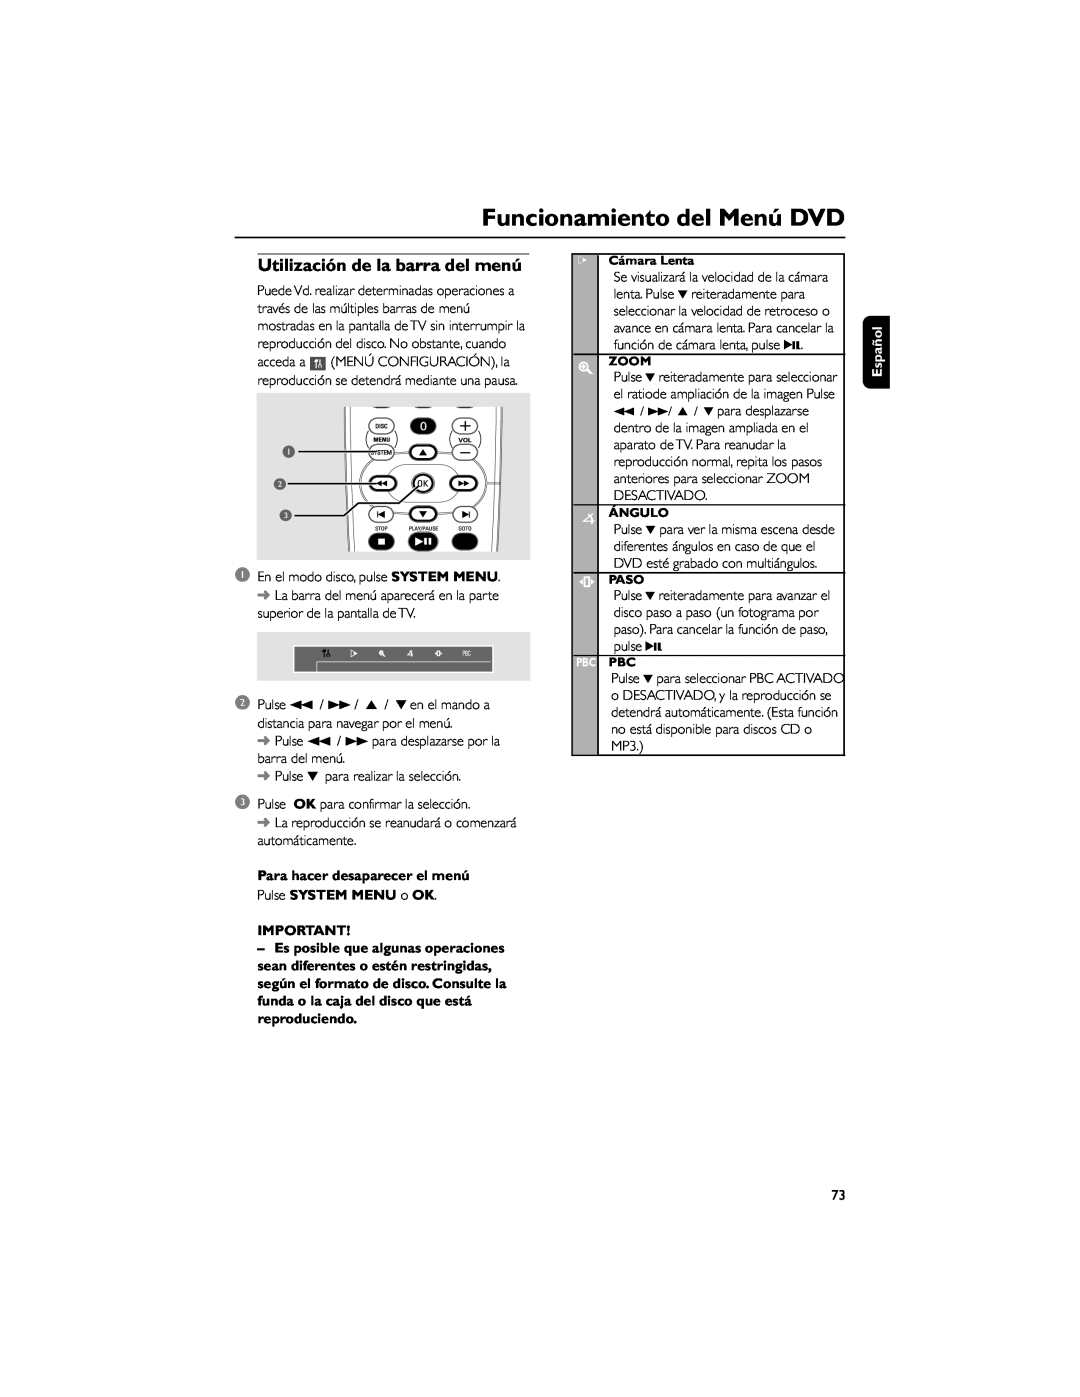 Philips FWD792 Funcionamiento del Menú DVD, Utilización de la barra del menú, Para hacer desaparecer el menú, Español 